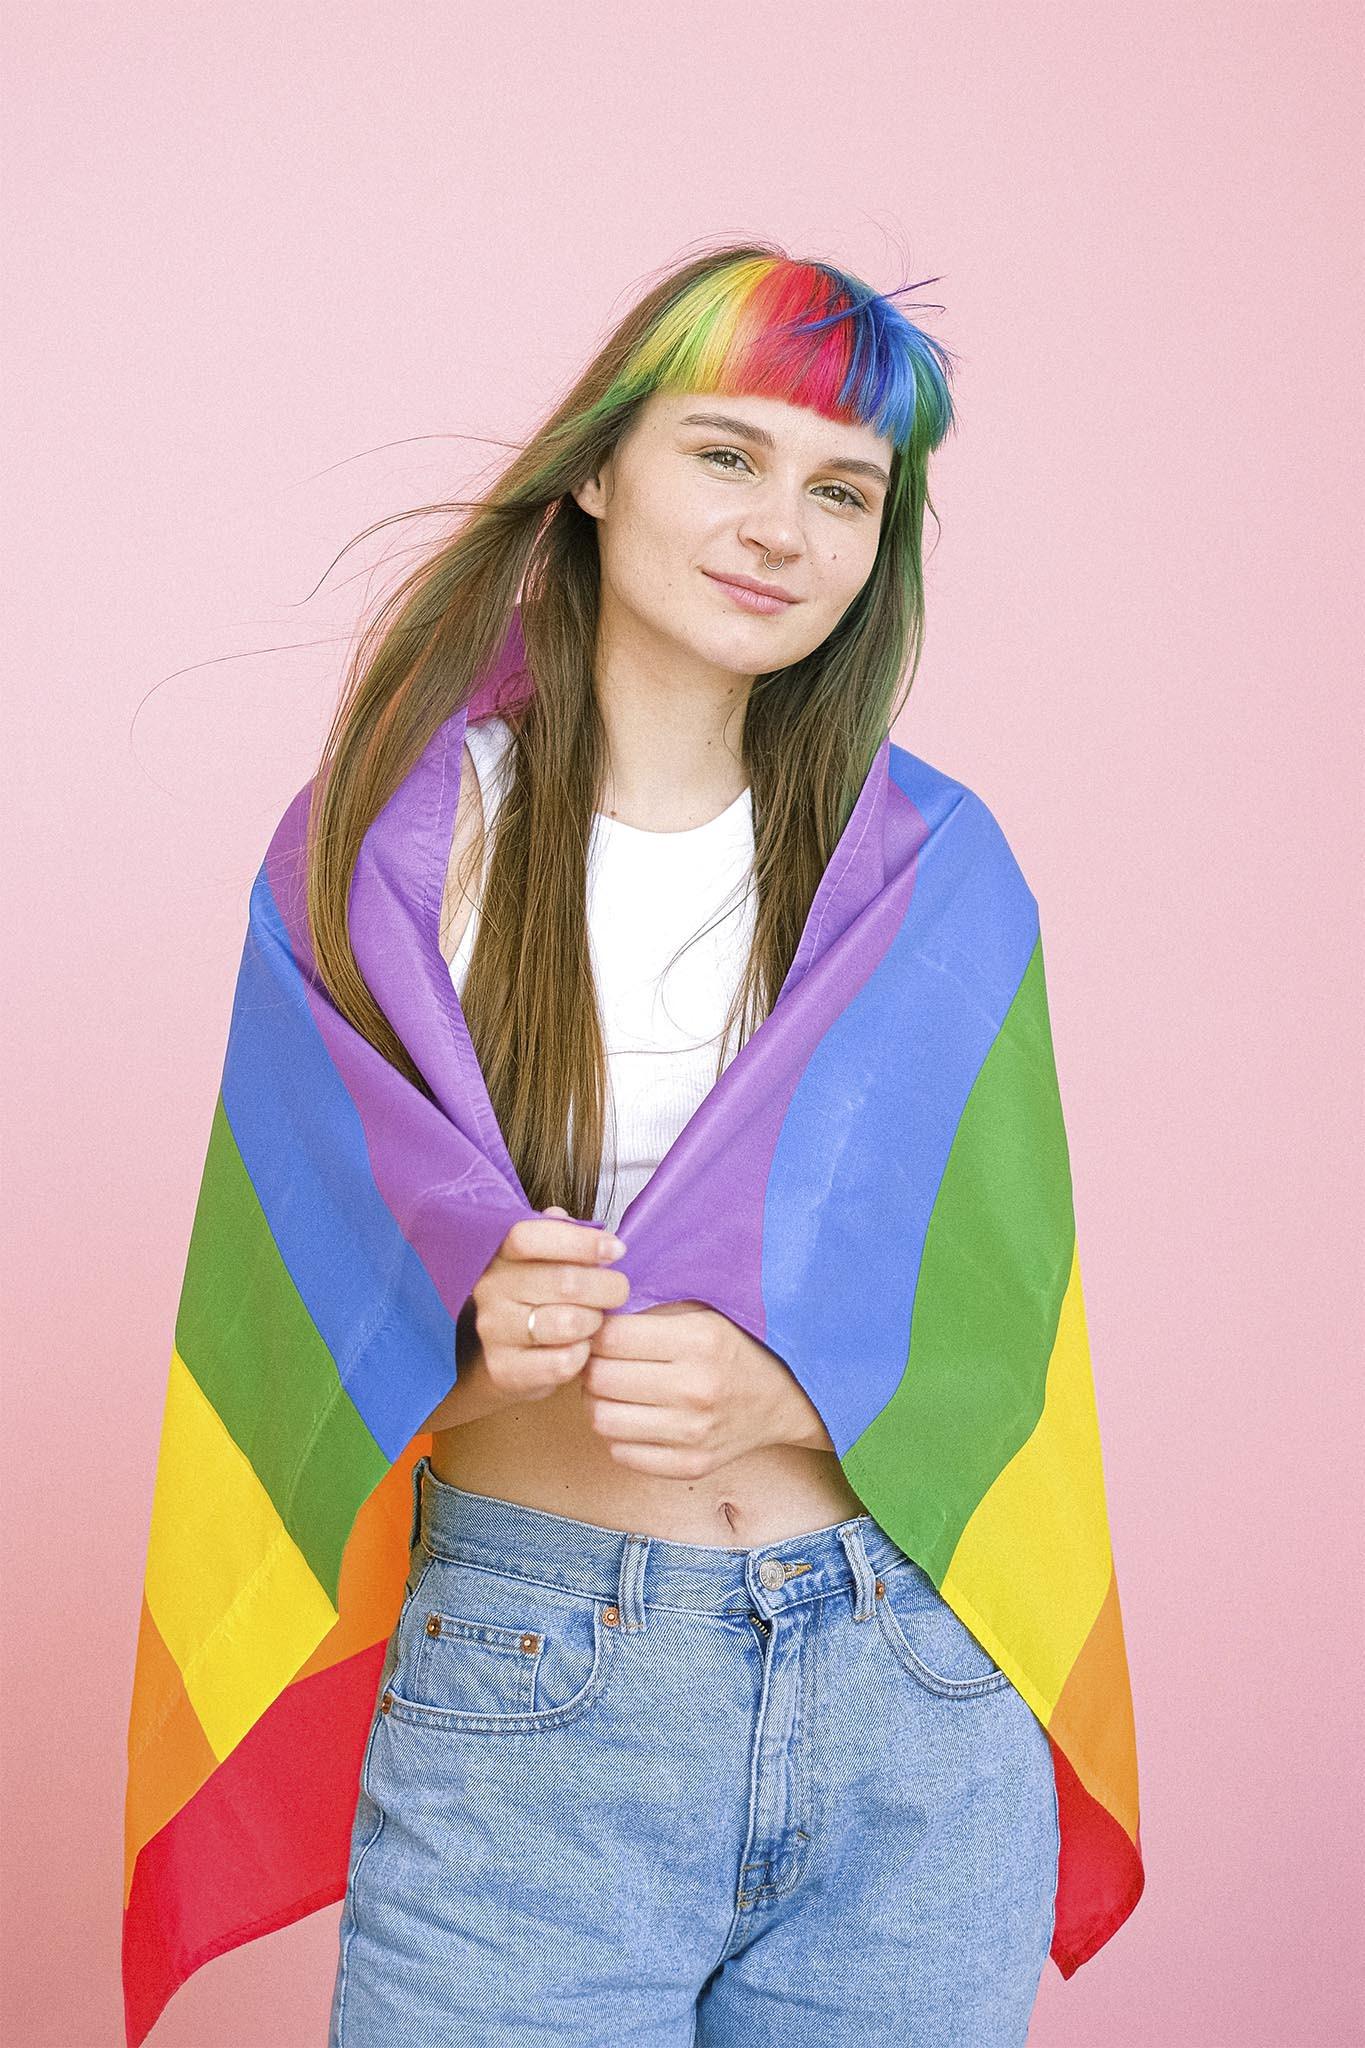 mujer de pelo largo con flequillo recto y pelo arcoiris con bandera del orgullo